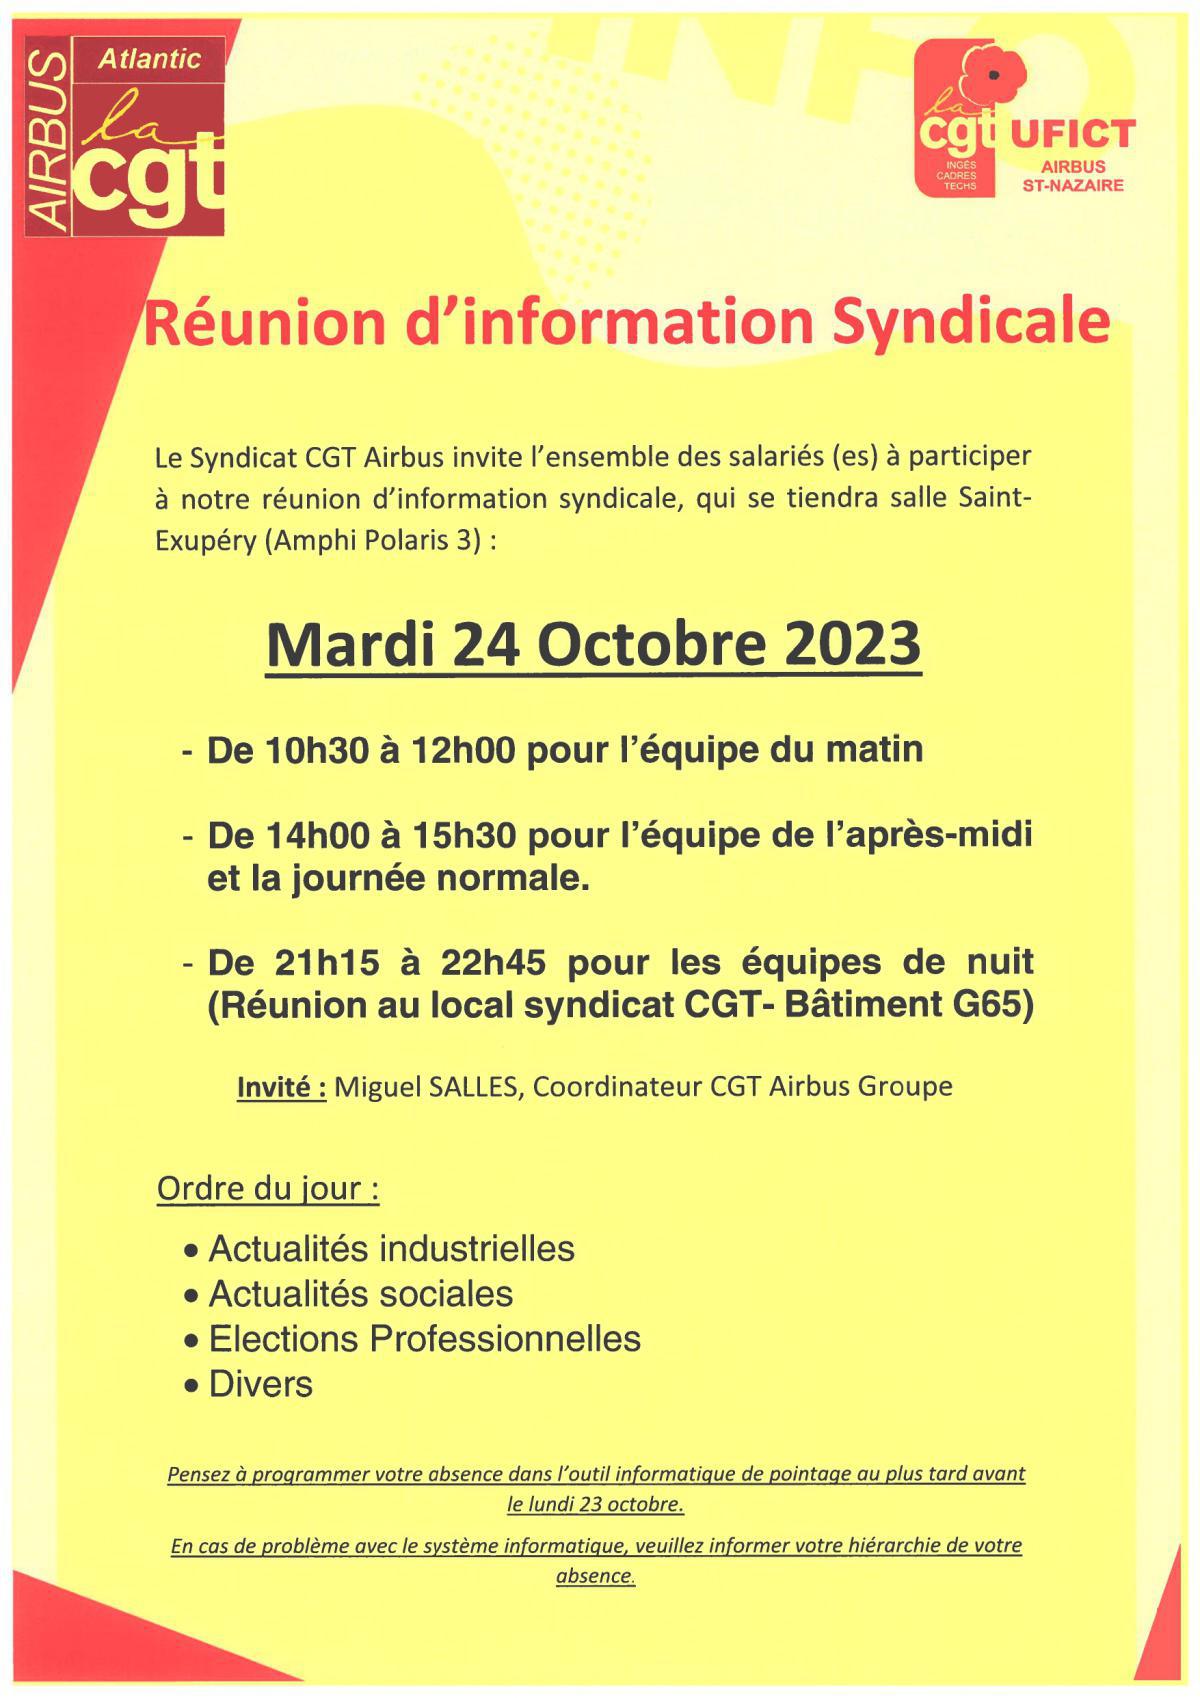 24 octobre 2023 : Réunion d'information syndicale